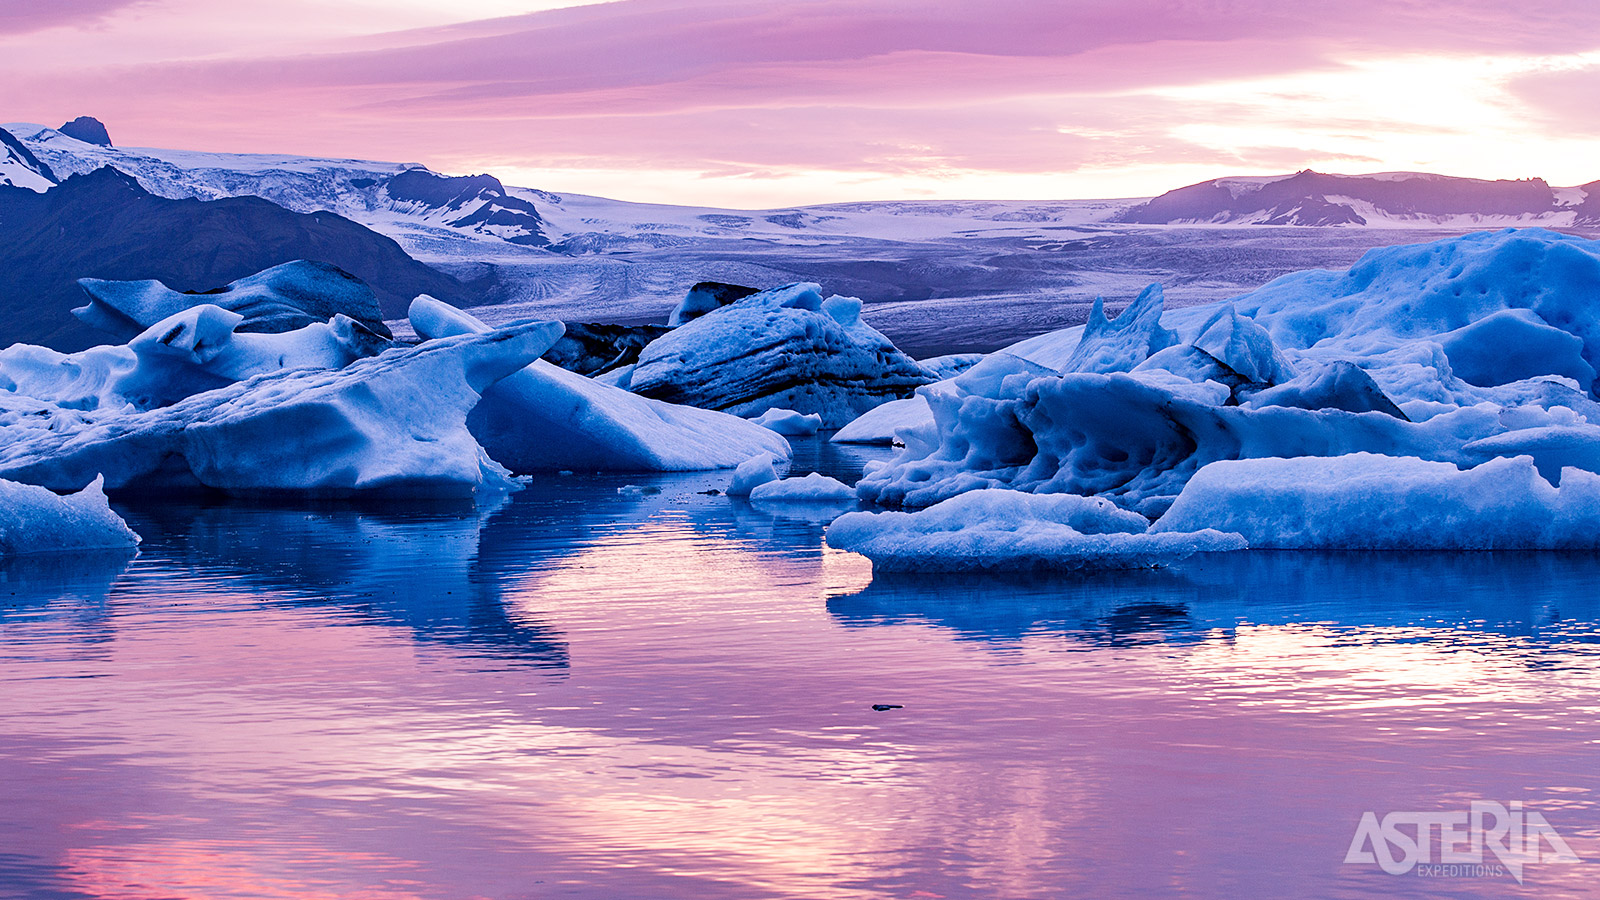 Het fotogenieke Jökulsárlón is een gletsjermeer met enorme ijsblokken die van de gletsjer afbreken